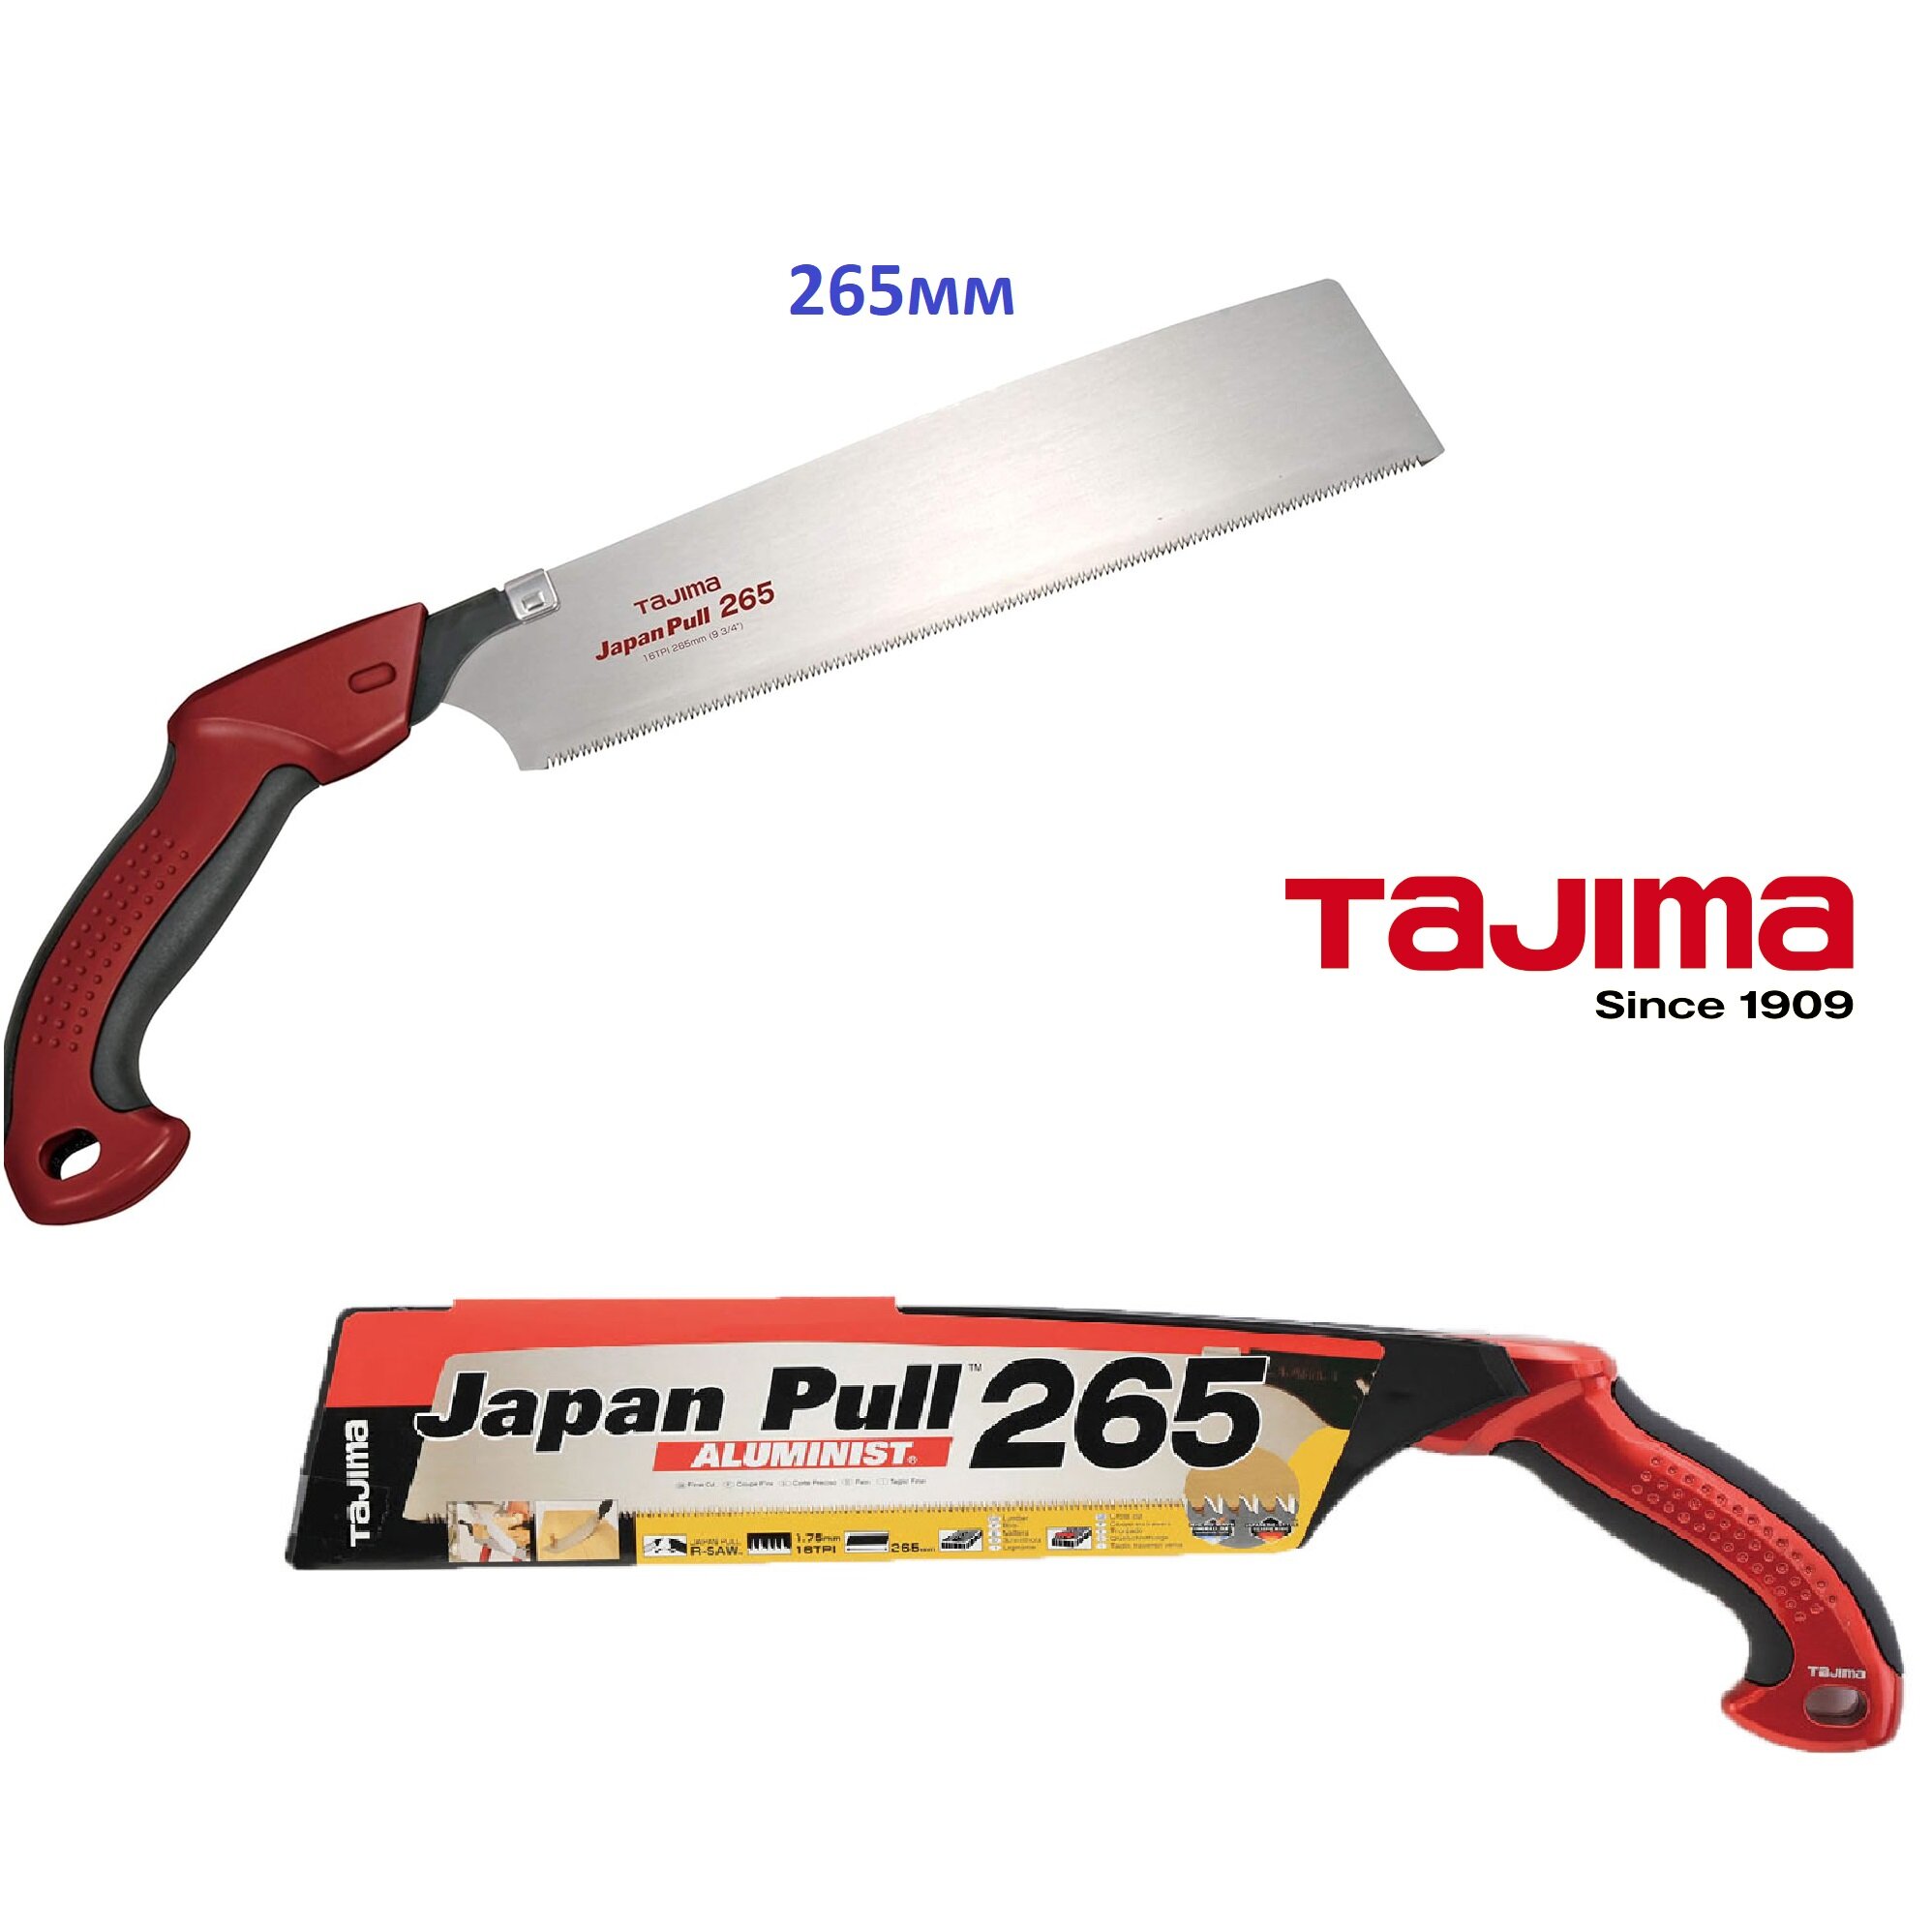 Пила ручная TAJIMA Japan Pull (JPR265A) 265мм, с алюминиевой изогнутой ручкой, в пластиковом чехле